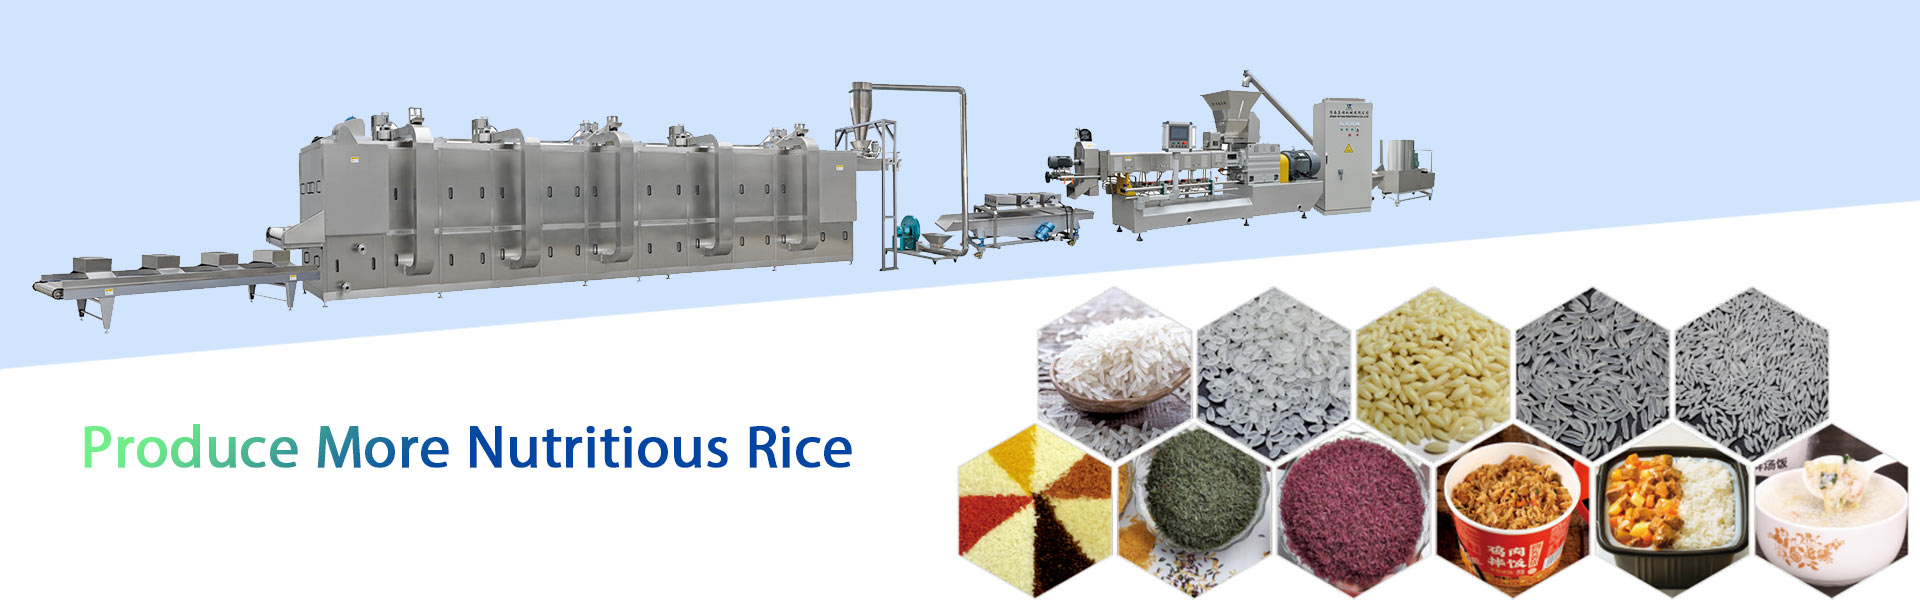 إنتاج أرز أكثر تغذية